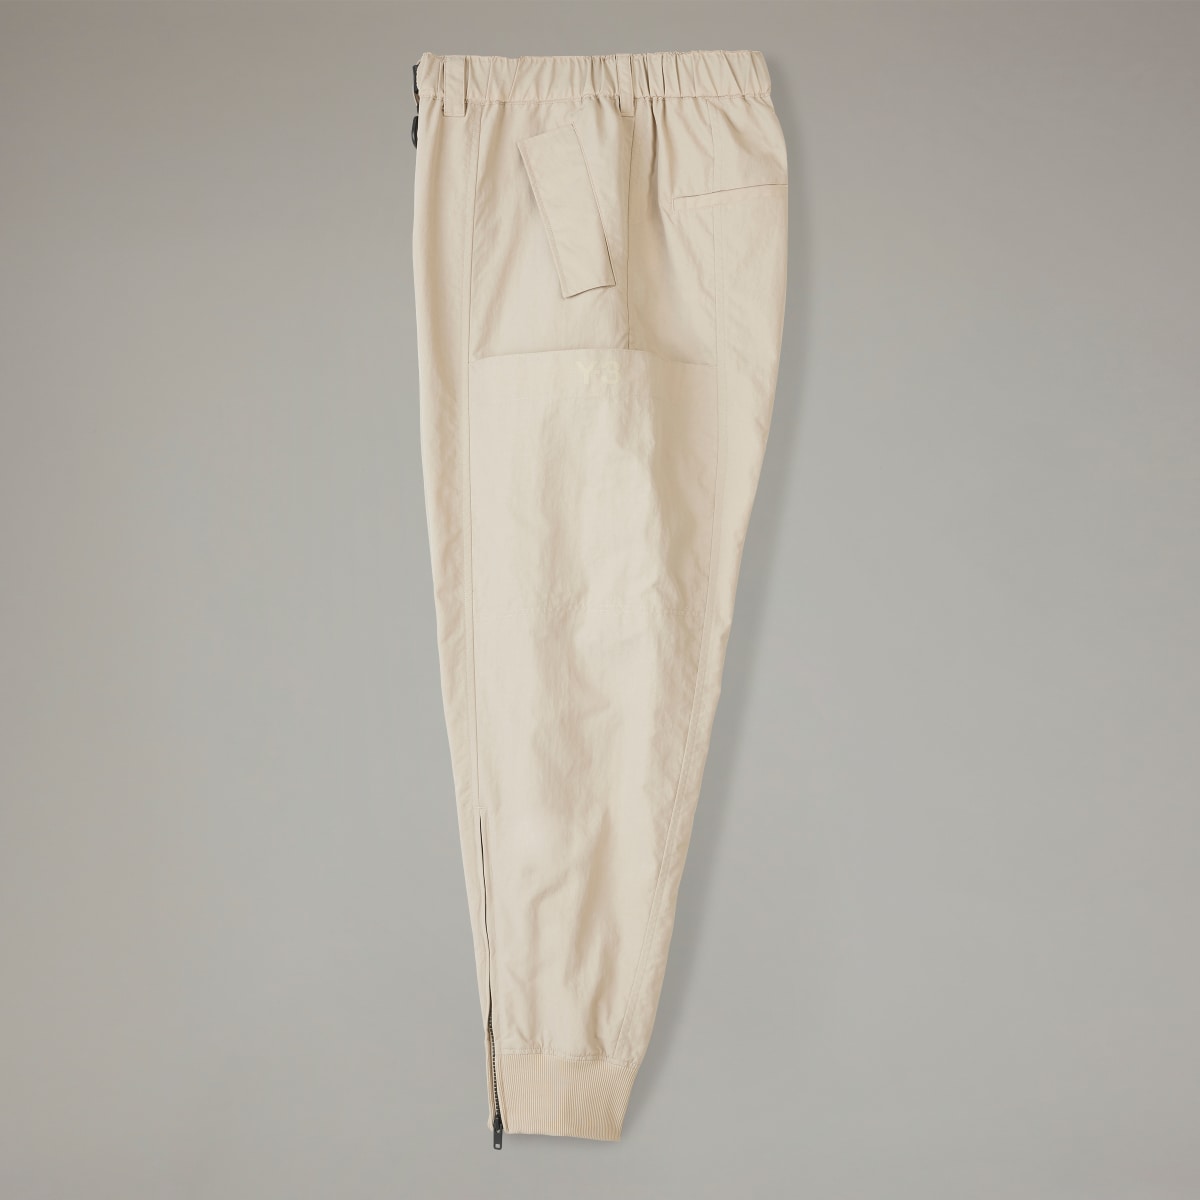 Adidas Y-3 Crinkle Nylon Cuffed Pants. 5